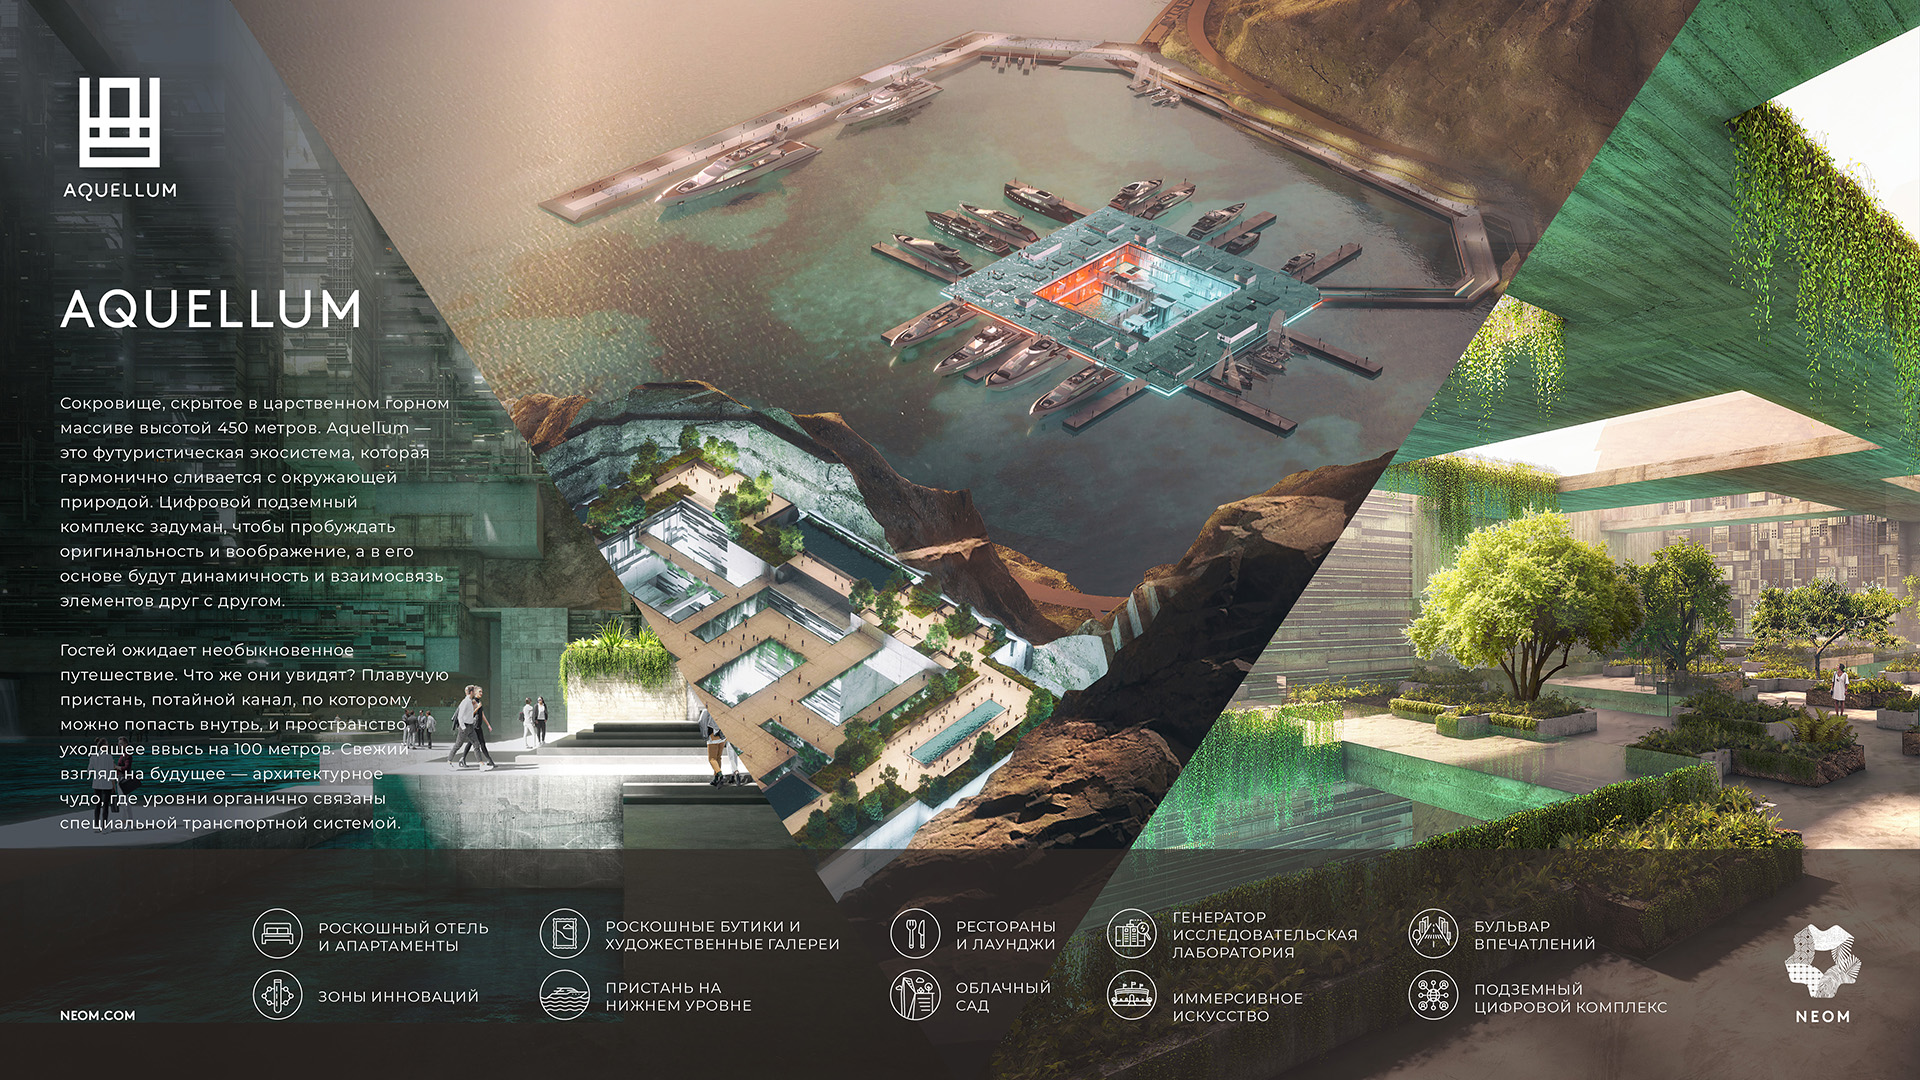 : Изображение, представляющее информацию о будущей экосистеме Аквеллума